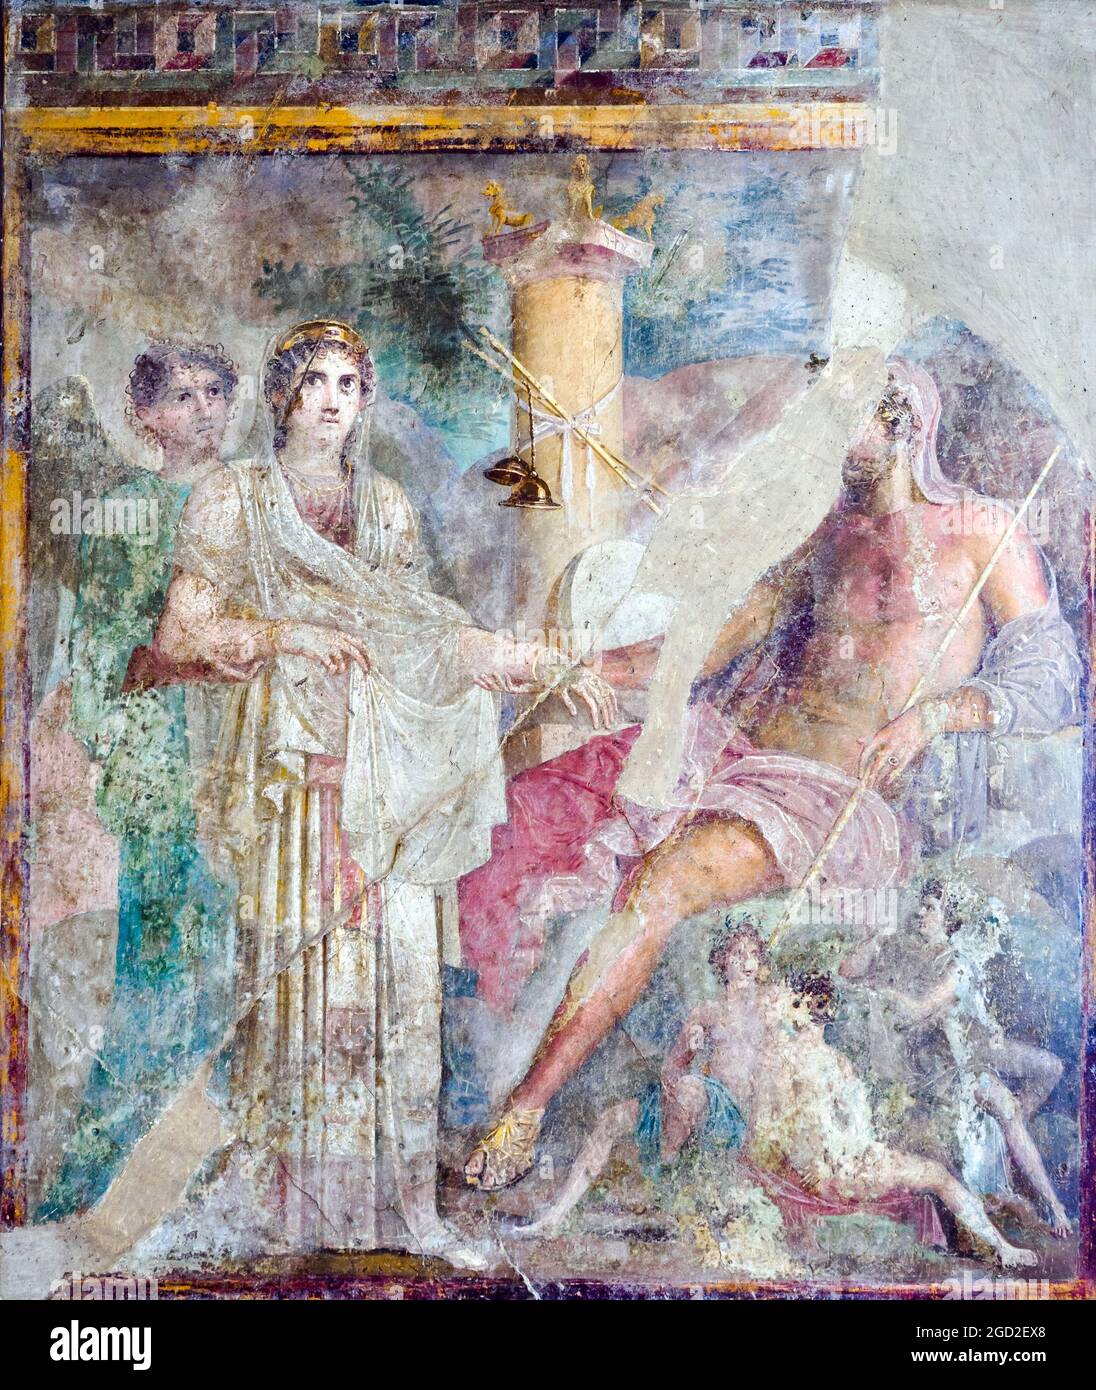 Hierogamia Boda Divina entre Hera y Zeus, en presencia de Iris y en medio de personificaciones del fresco renovado de la naturaleza Pompeya, Casa del Poeta Tragico (Casa del poeta trágico) 45-79 d.C. Foto de stock